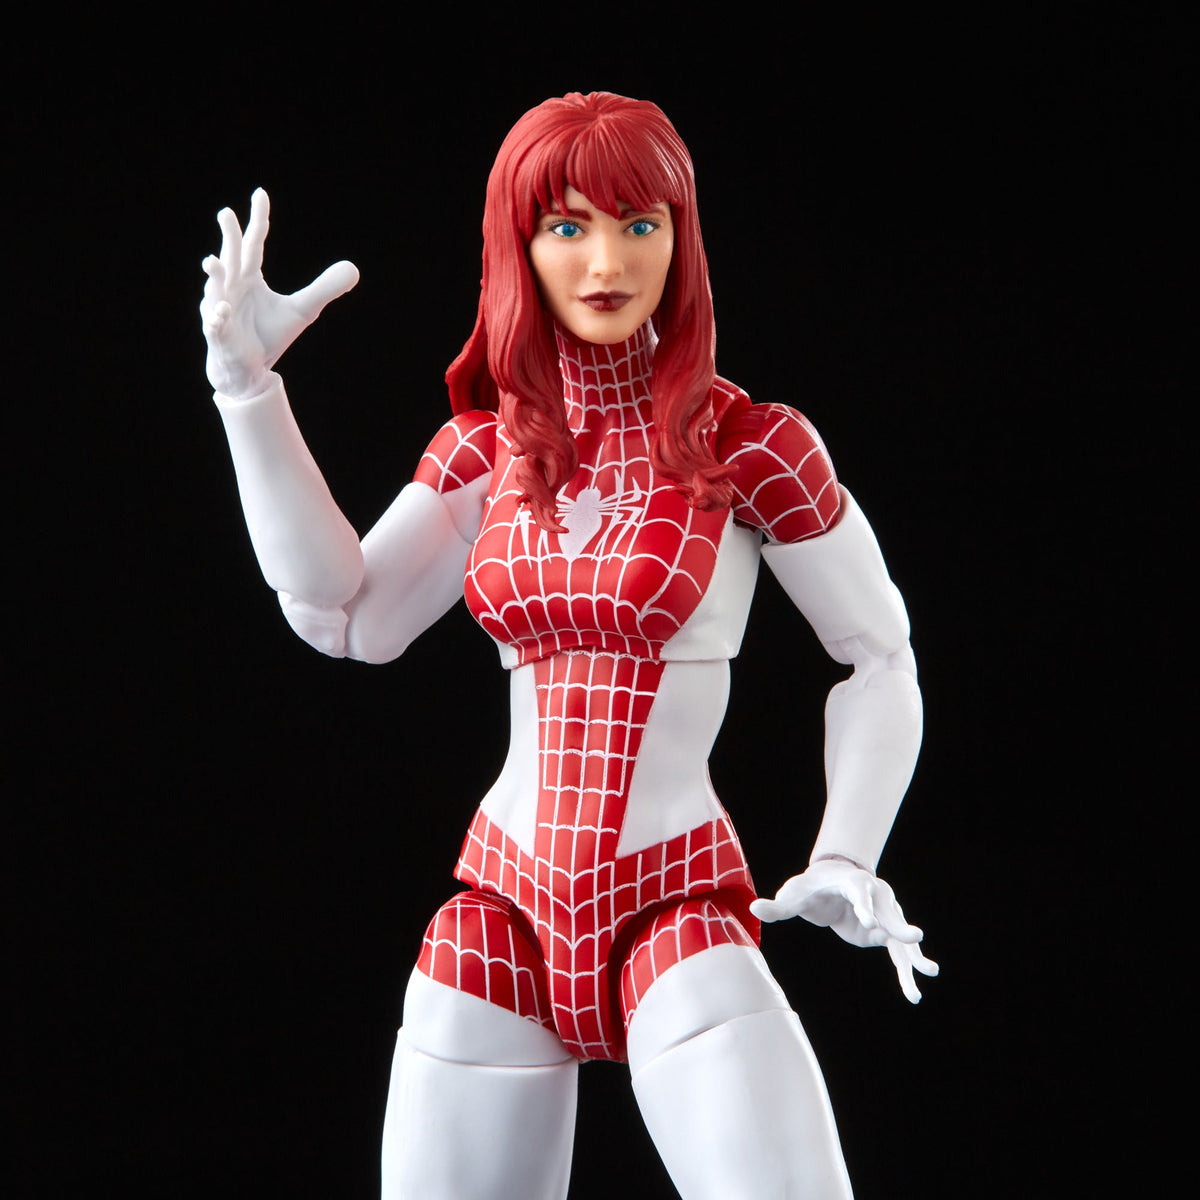 Hasbro Marvel Legends Series Spider-Man, 6 Marvel Legends Action Figures -  Marvel